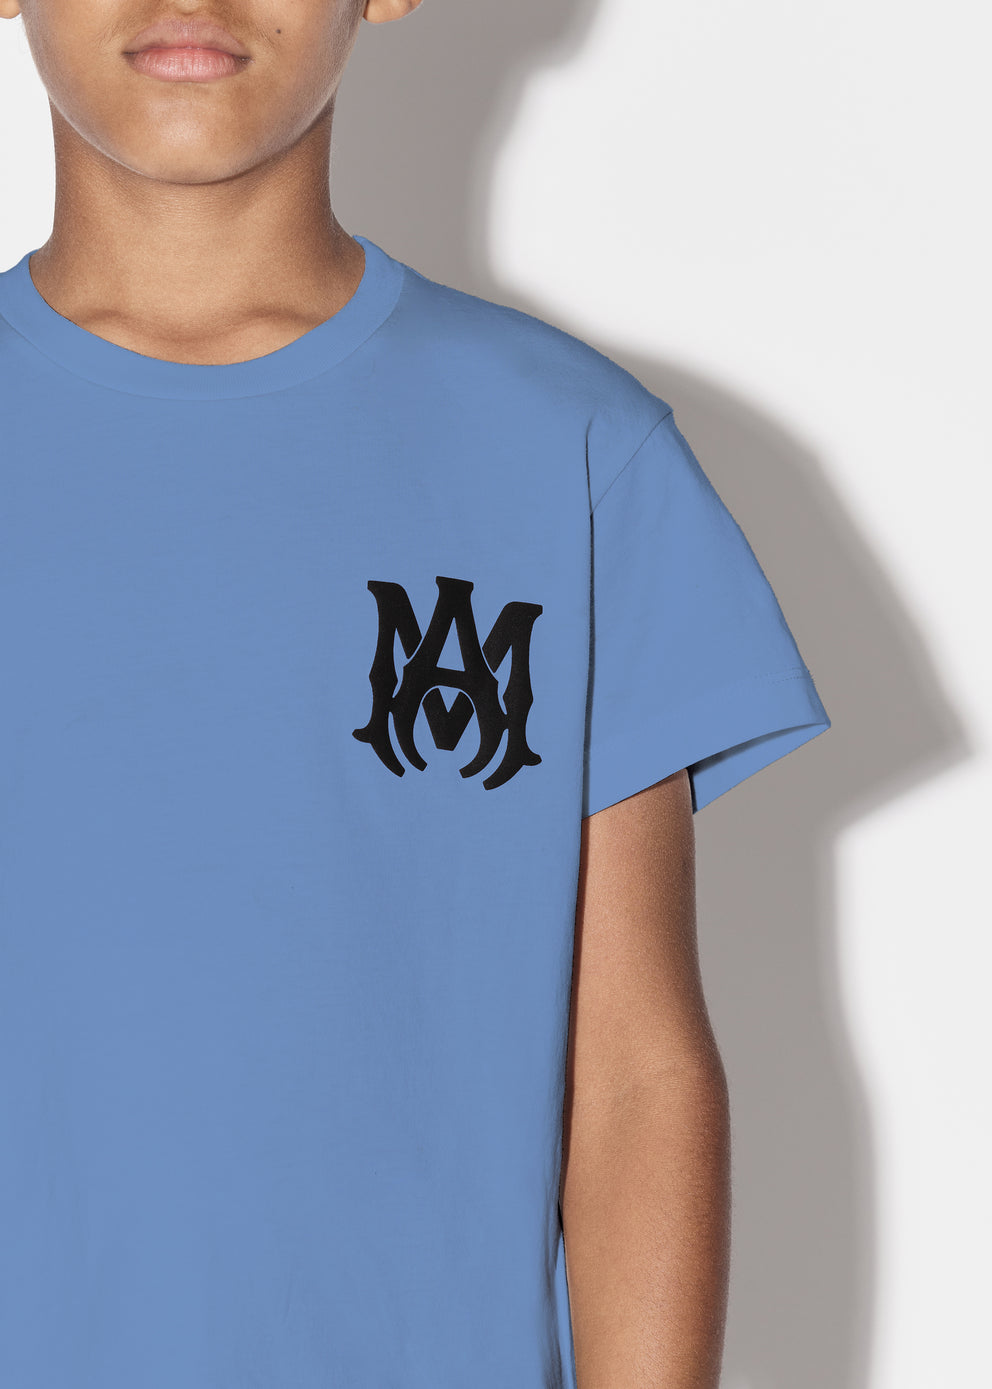 Camisetas Running Amiri M.A. Niños Azules | 1324-XMPIA